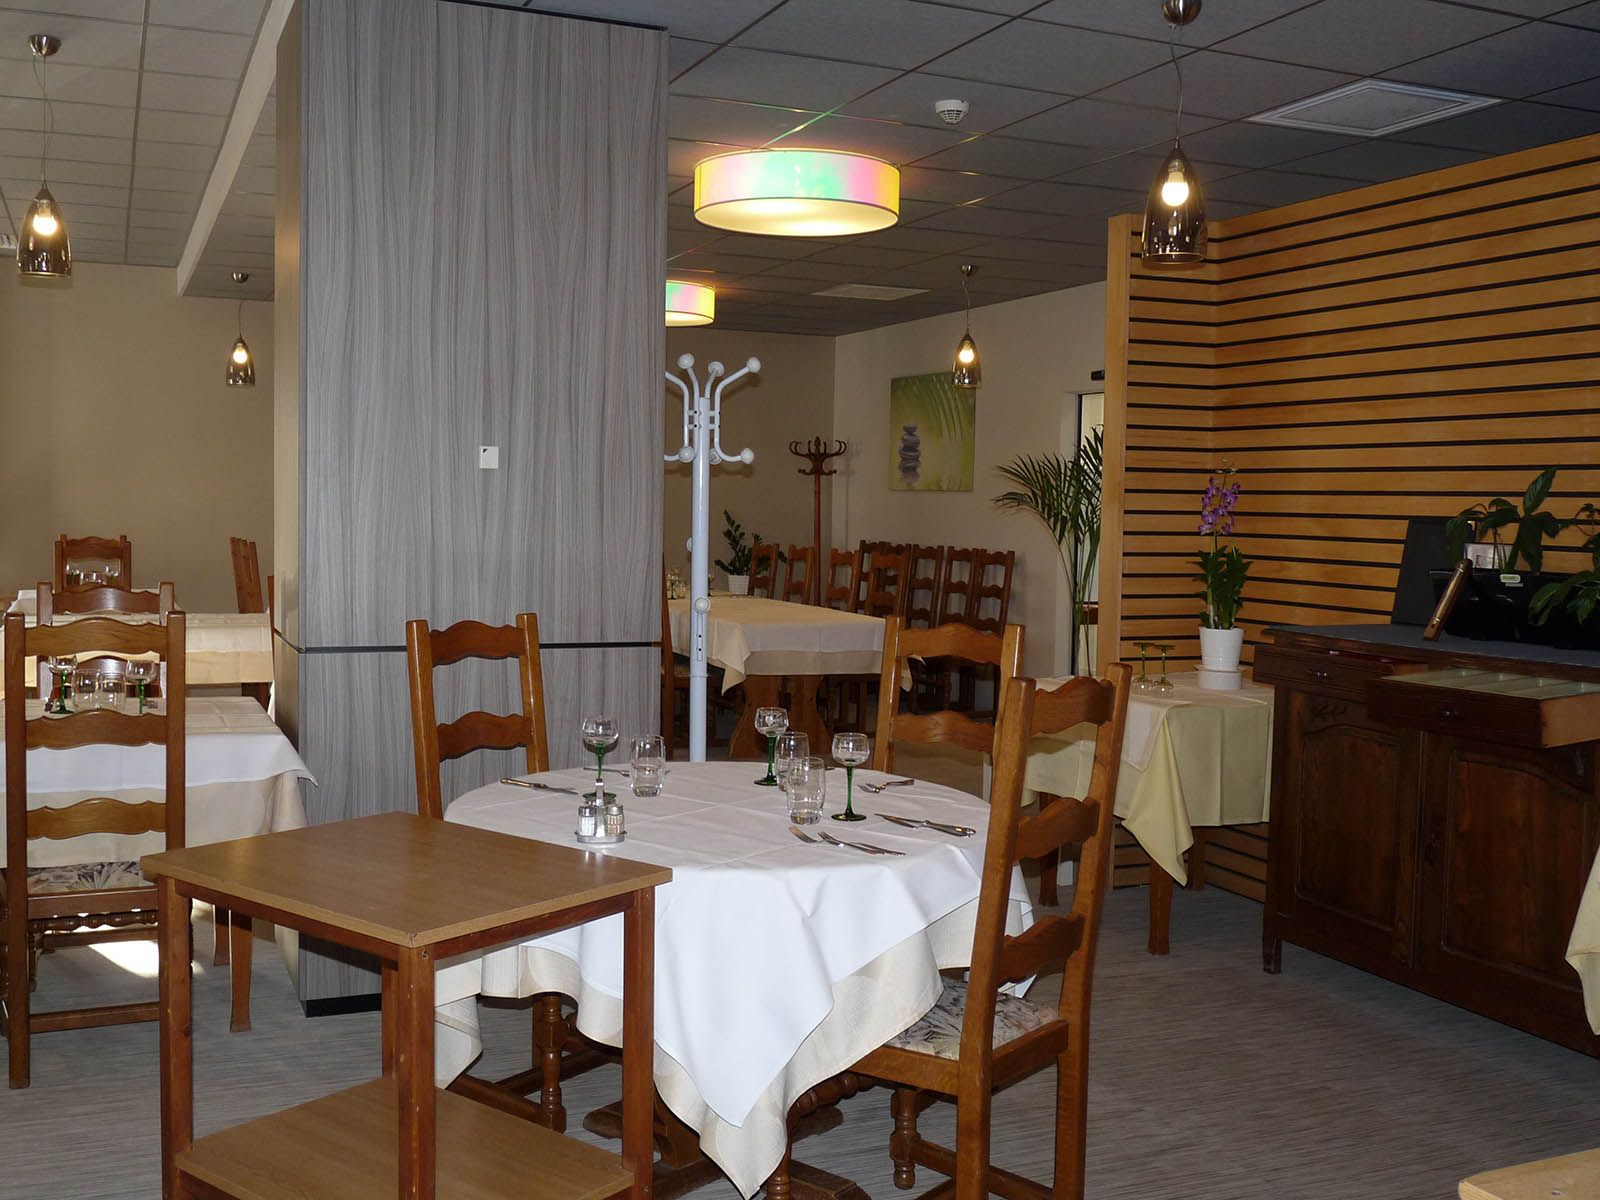 Hôtel-restaurant Aux Bords du Rhin à Rhinau, frontière allemande, proche europapark et rulantica